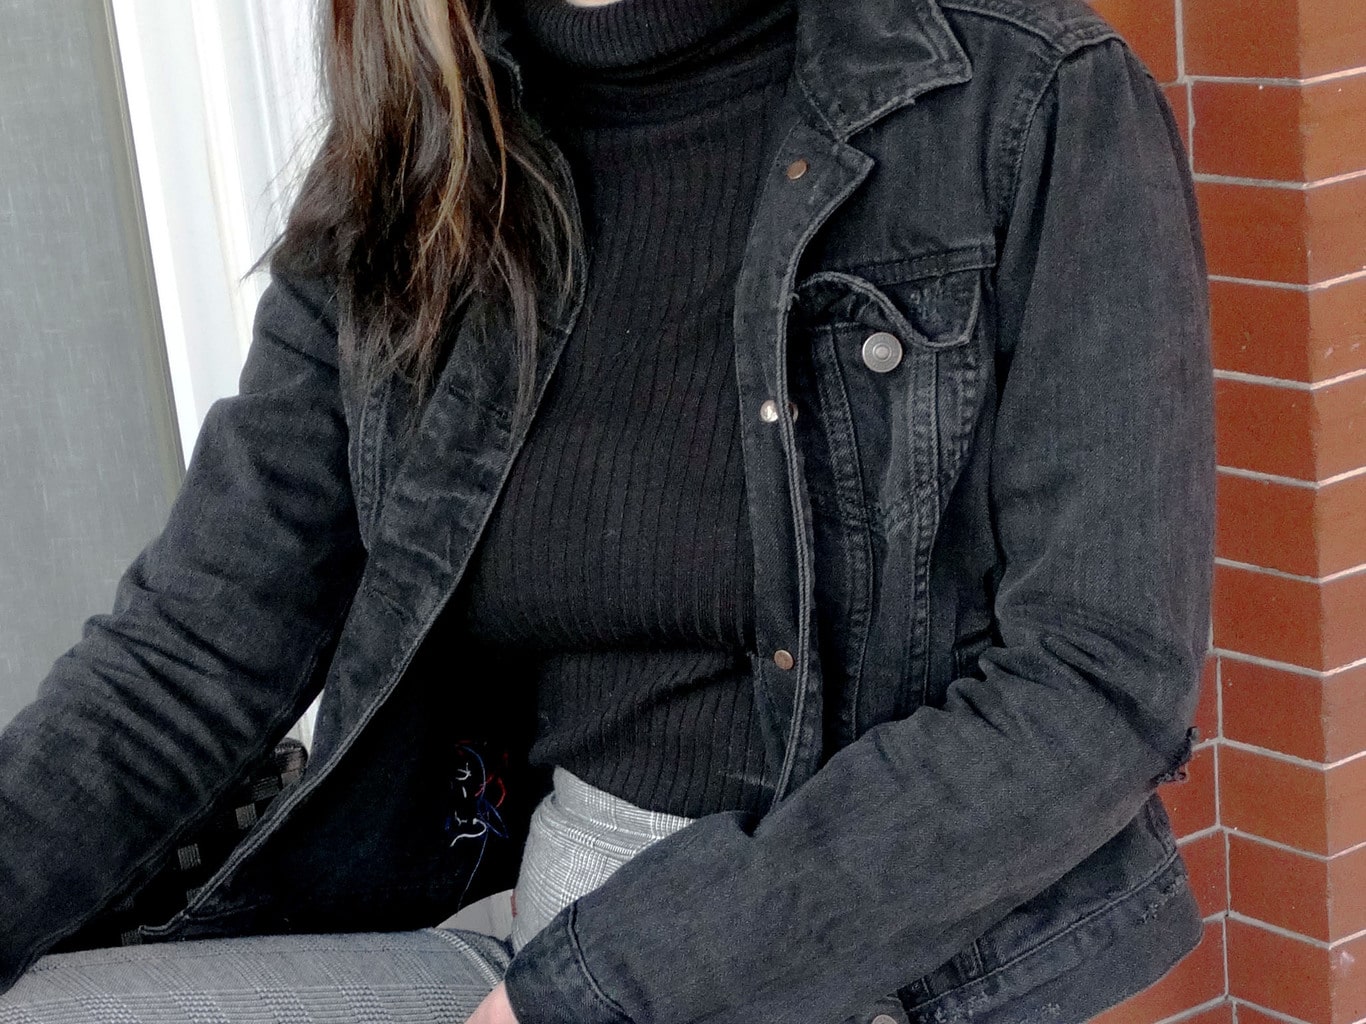 This grunge grey denim jacket accents Mackenzie's black turtleneck sweater.